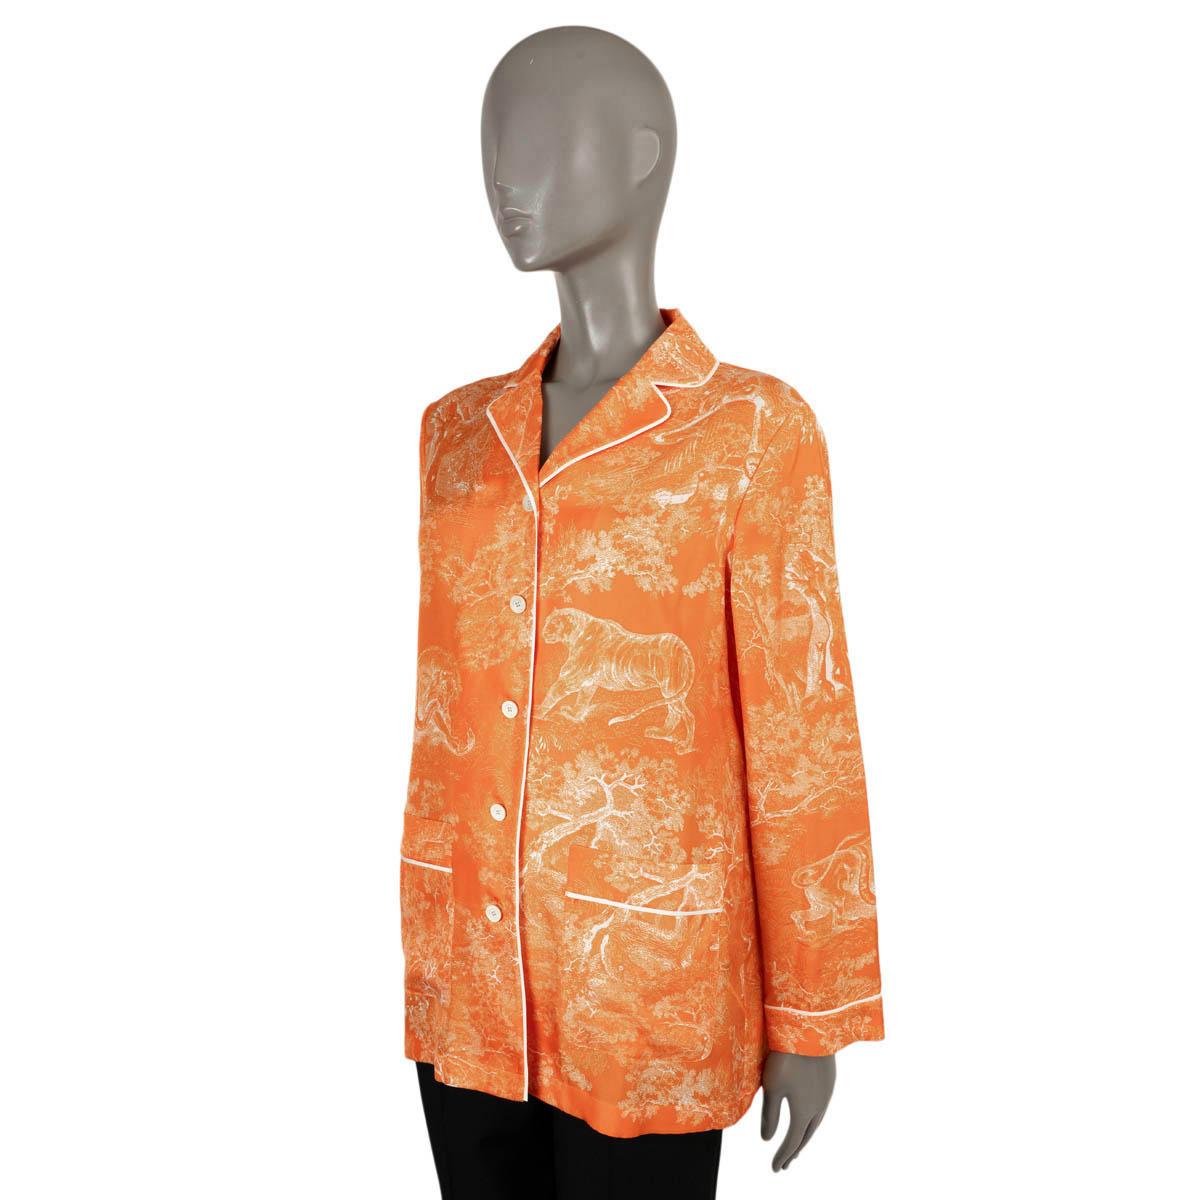 Chemise pyjama Christian Dior 100% authentique en Toile de Jouy orange fluo. Twill de soie inversé (100%). Il est doté d'un passepoil blanc contrasté et de deux poches. Il se ferme par des boutons sur le devant et n'est pas doublé. Ils ont été